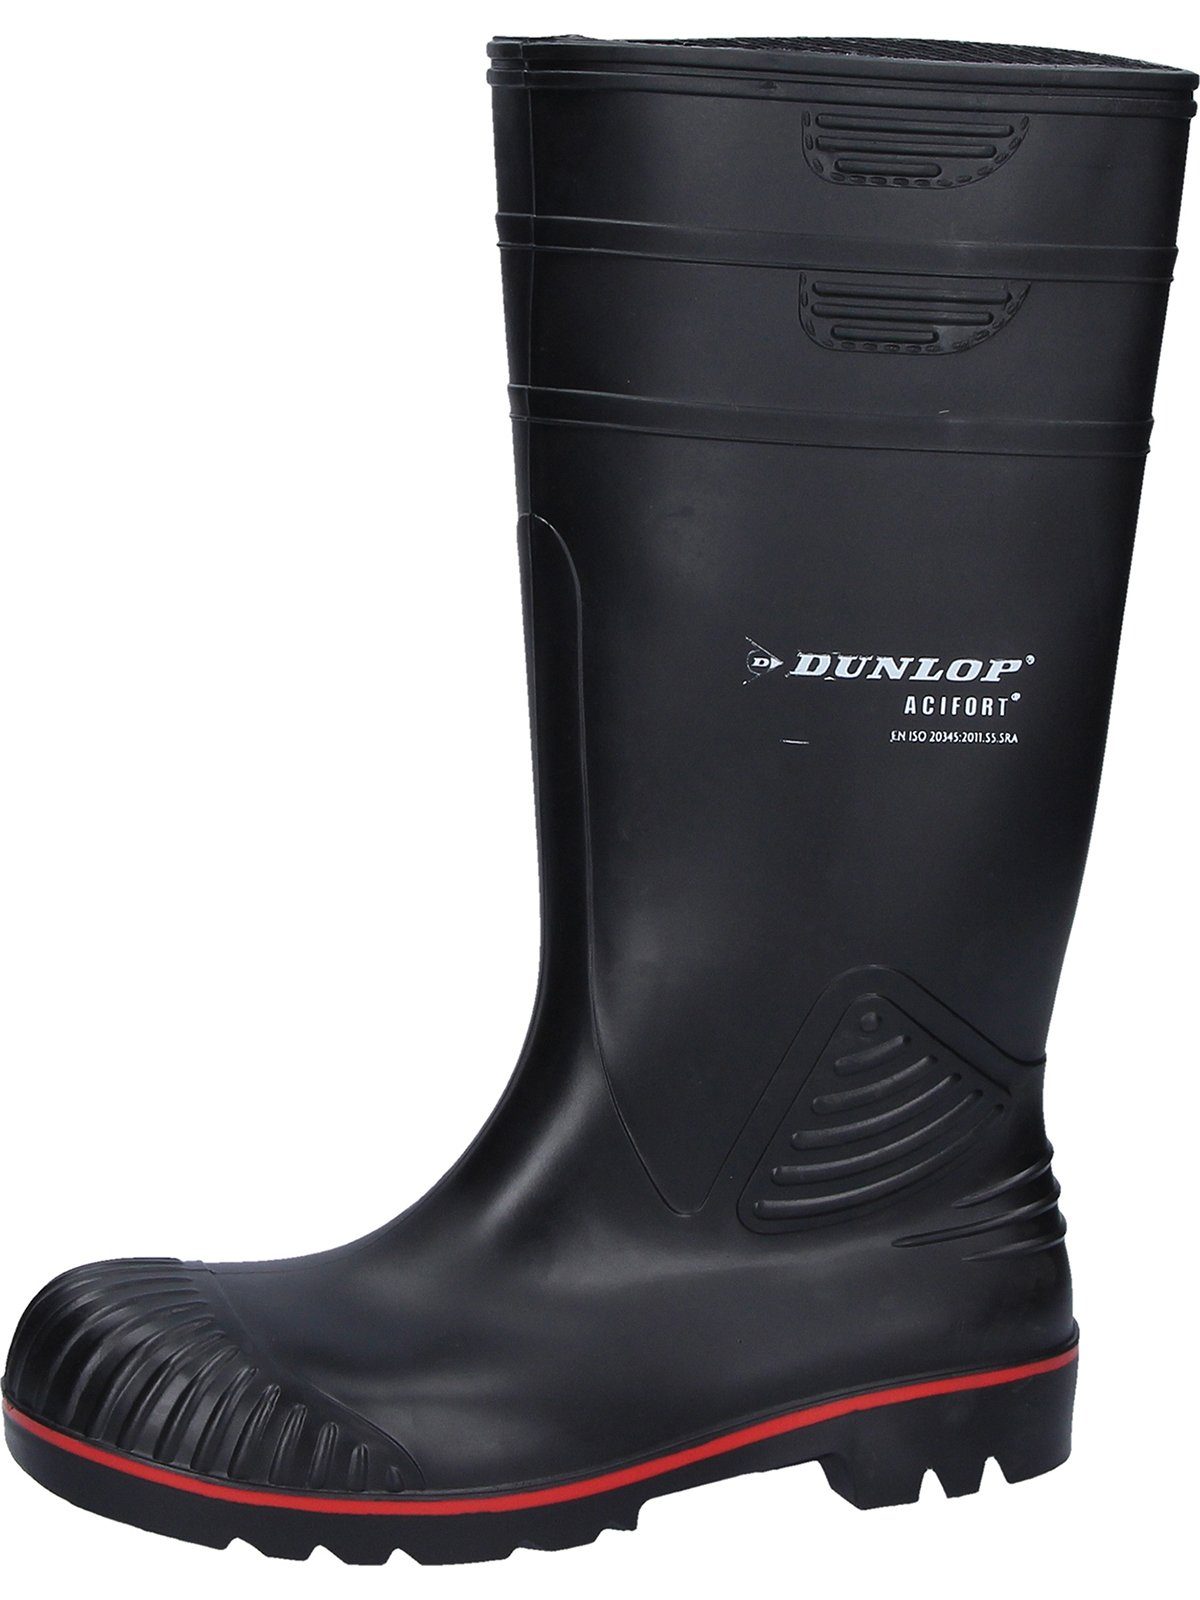 Dunlop_Workwear Stiefel Acifort